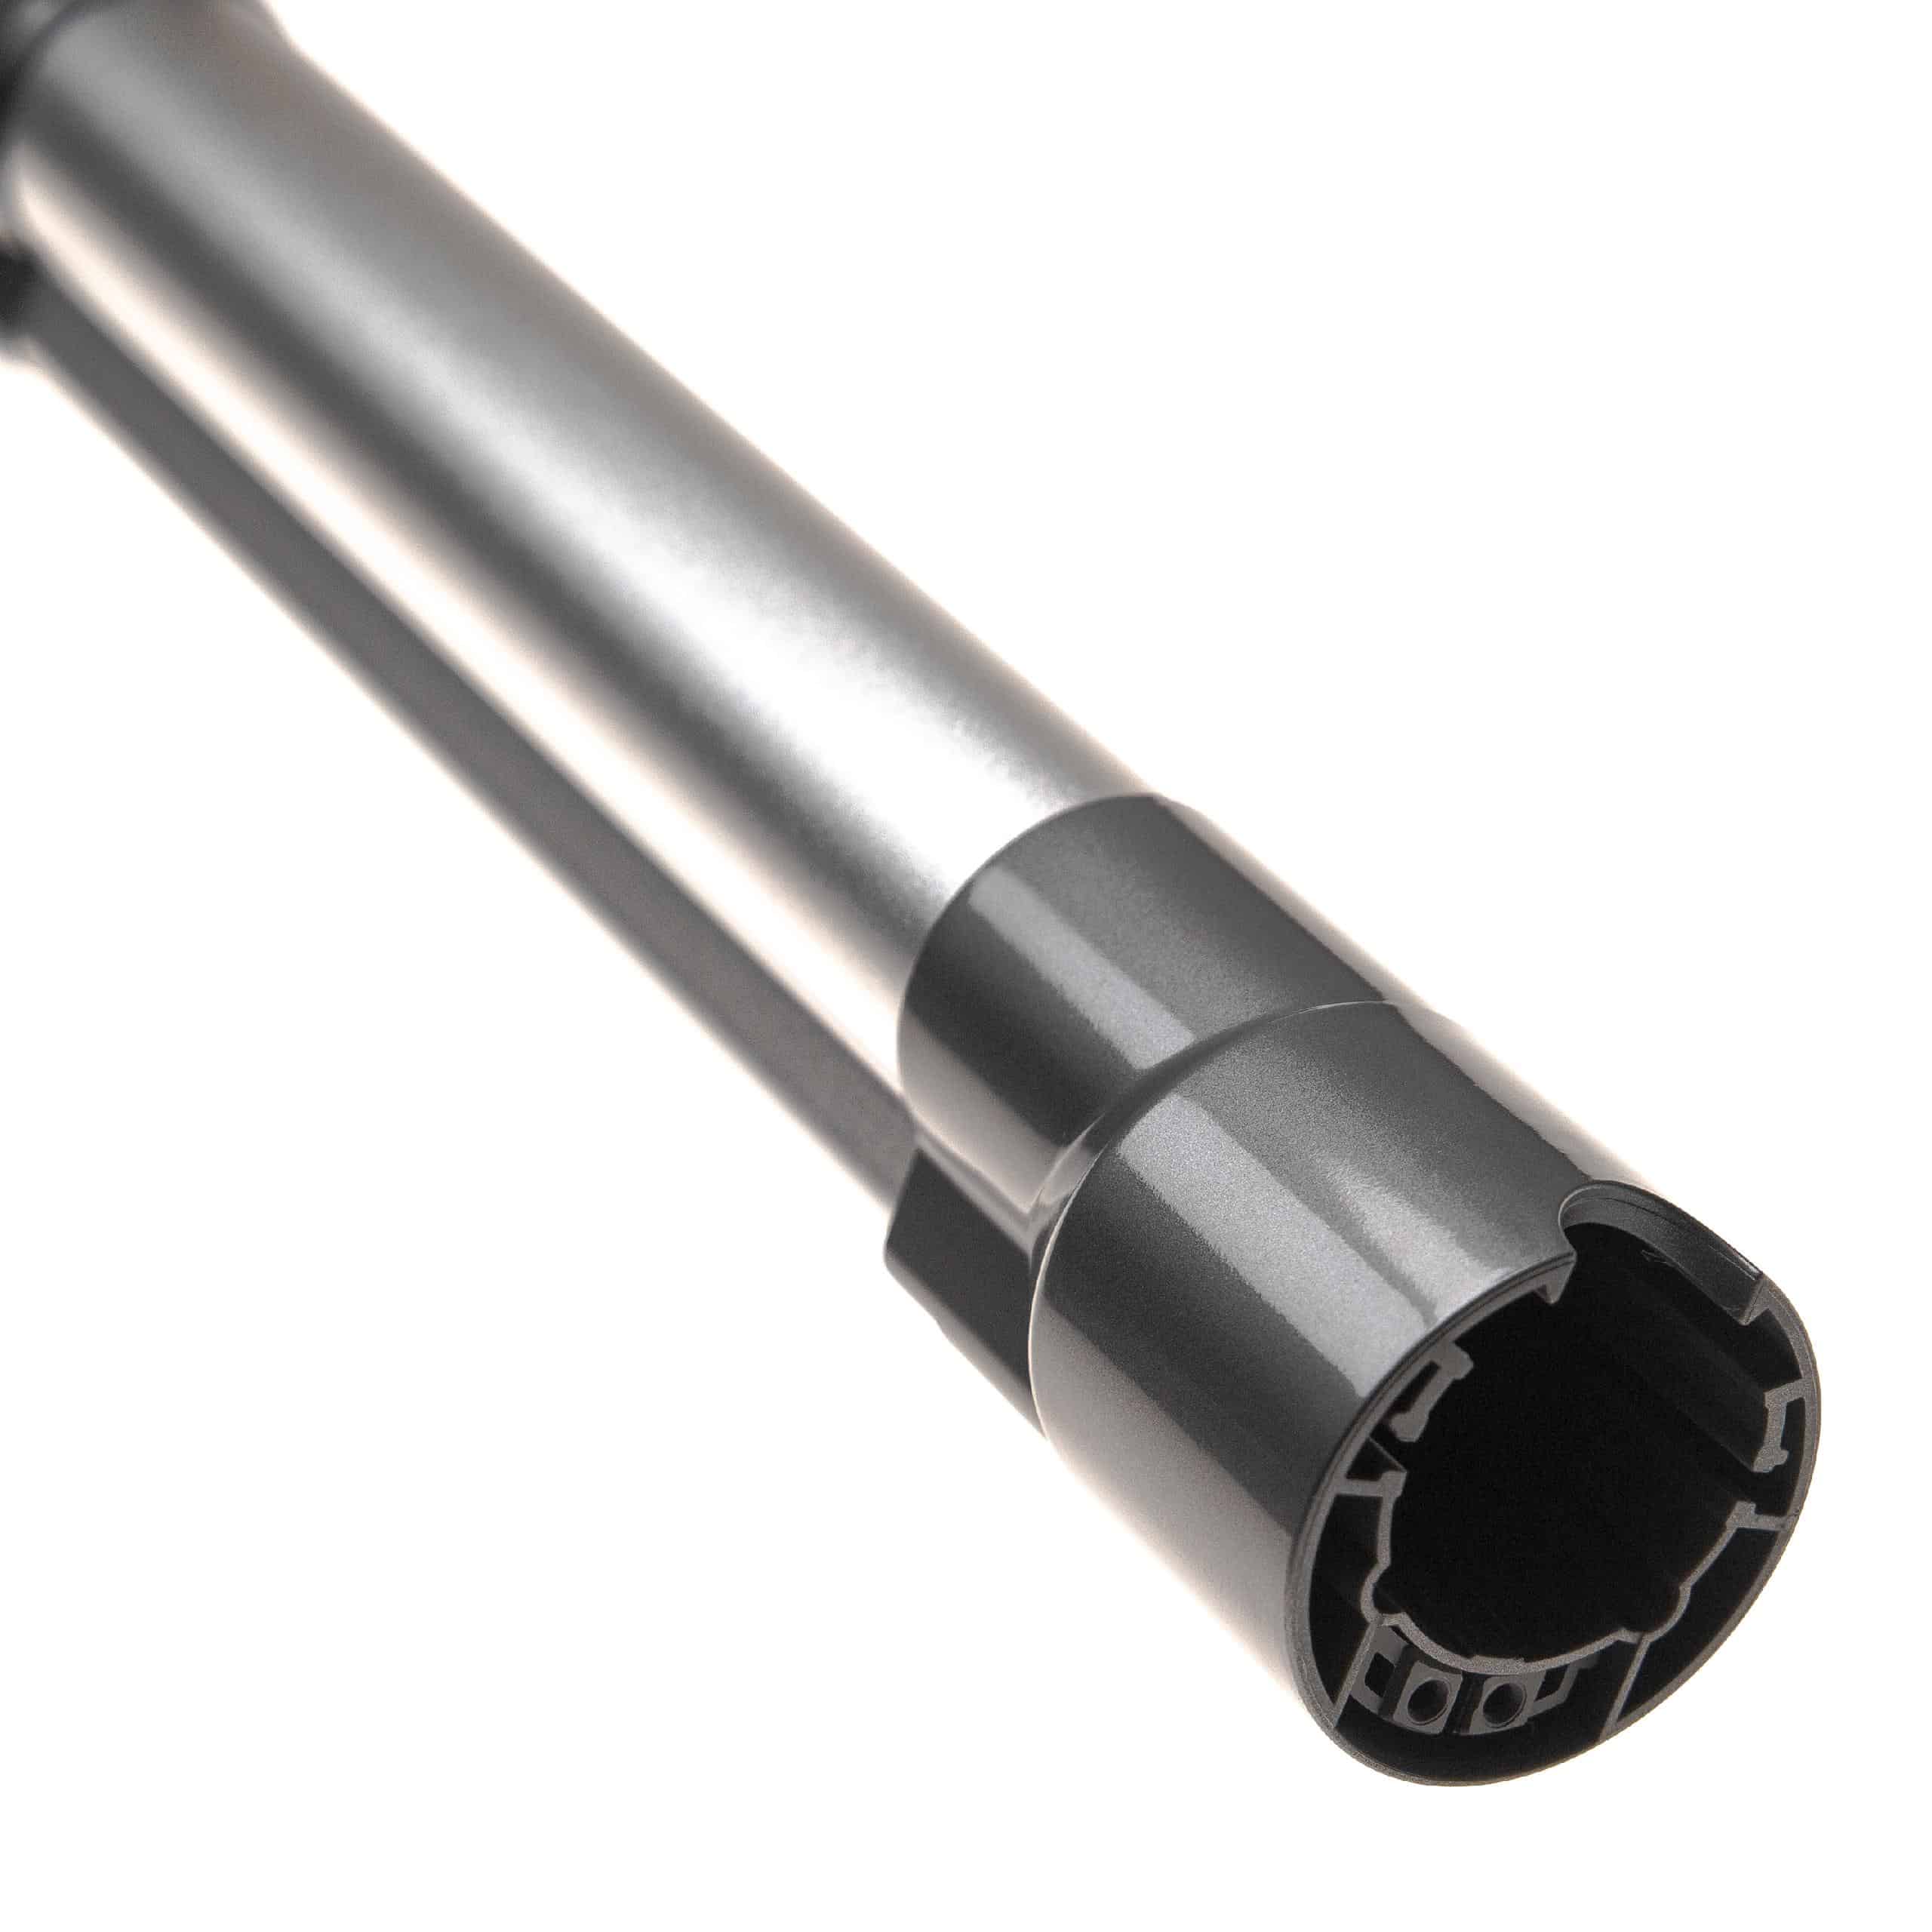 Tube for Dyson V10, V11, V15, V7, V8 vacuum cleaner - Length: 44.5 - 66.5 cm, silver